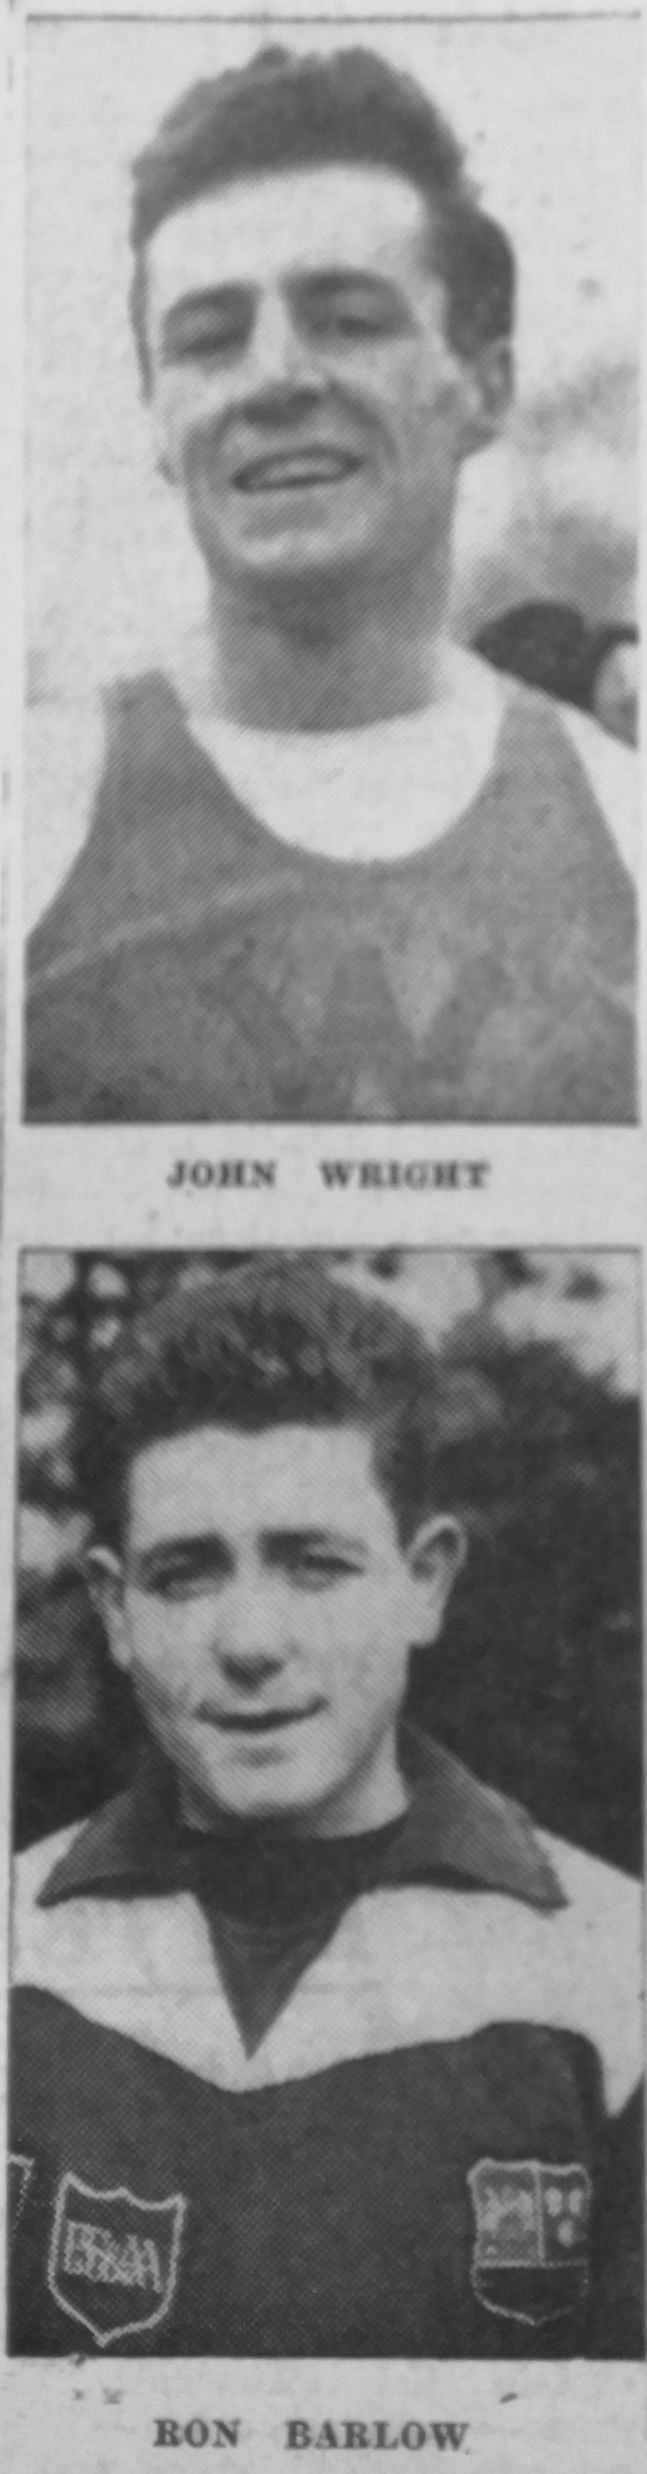 John Wright and Ron Barlow